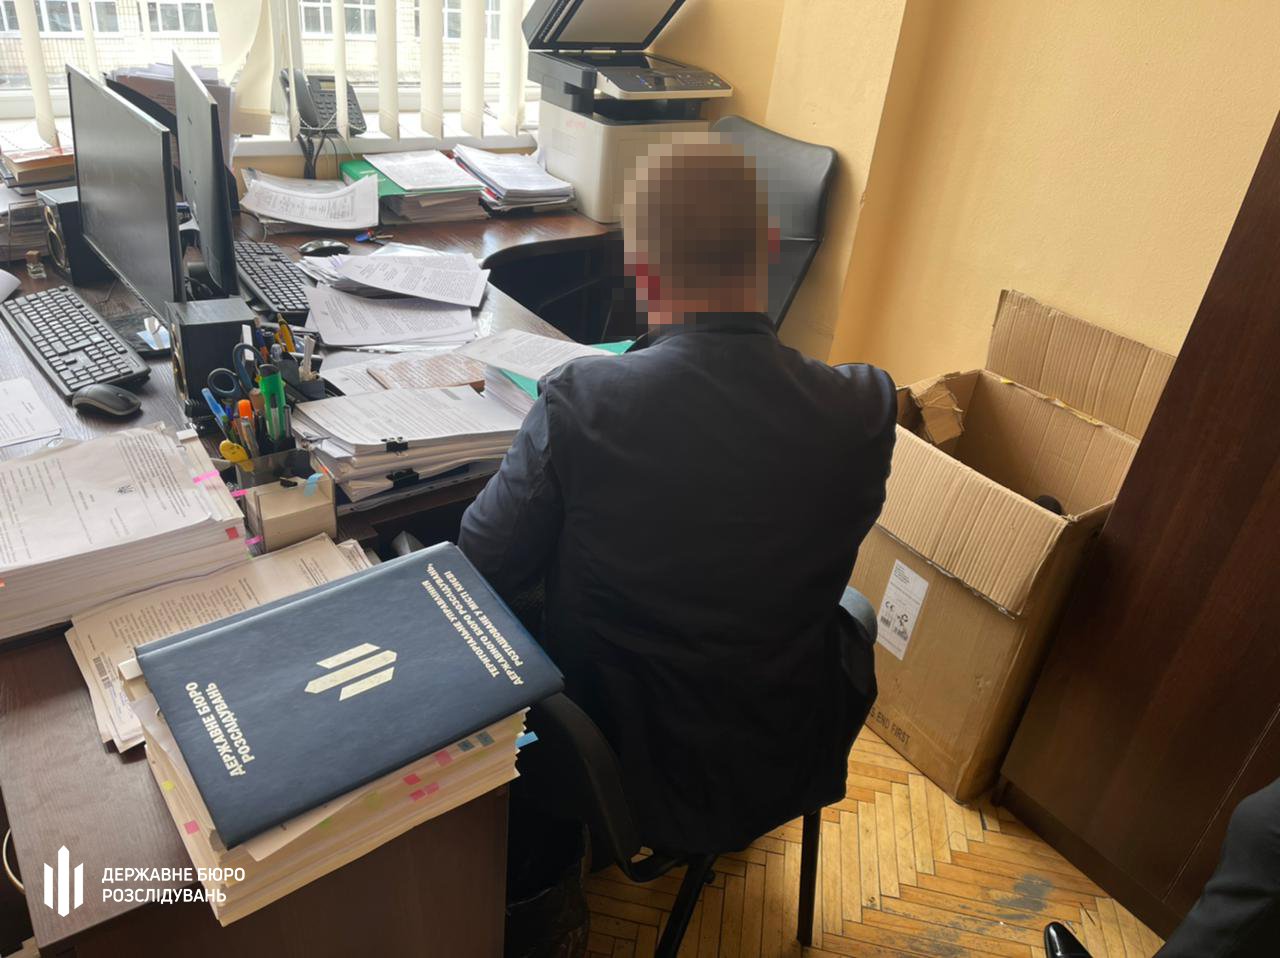 50 тысяч долларов и дело закрыто: Харьковский налоговик попался на взятке